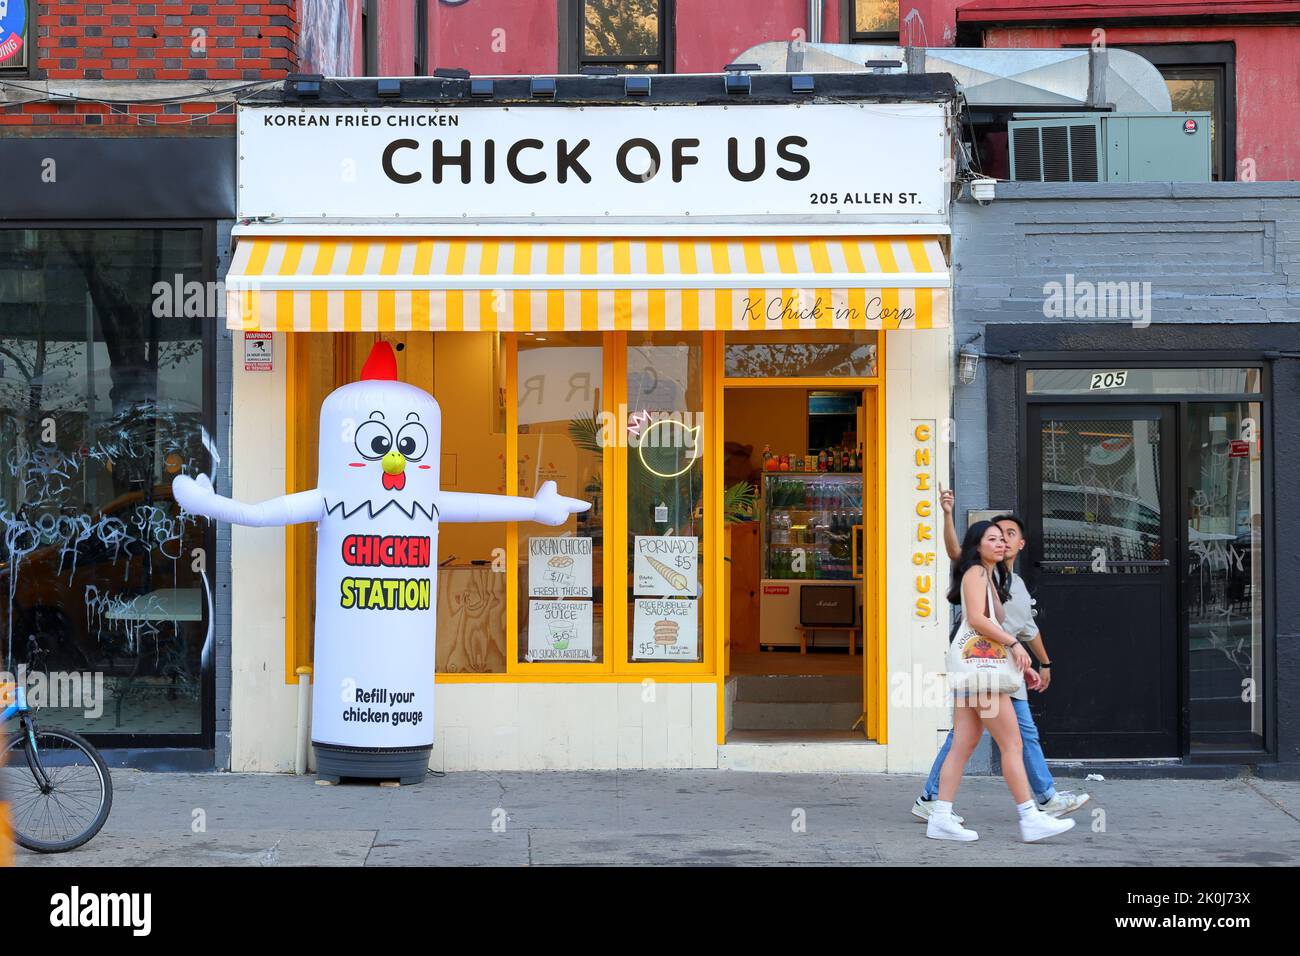 Chick of US, 205 Allen St, New York, NYC Schaufensterfoto eines koreanischen Brathähnchenrestaurants in Manhattans Lower East Side. Stockfoto